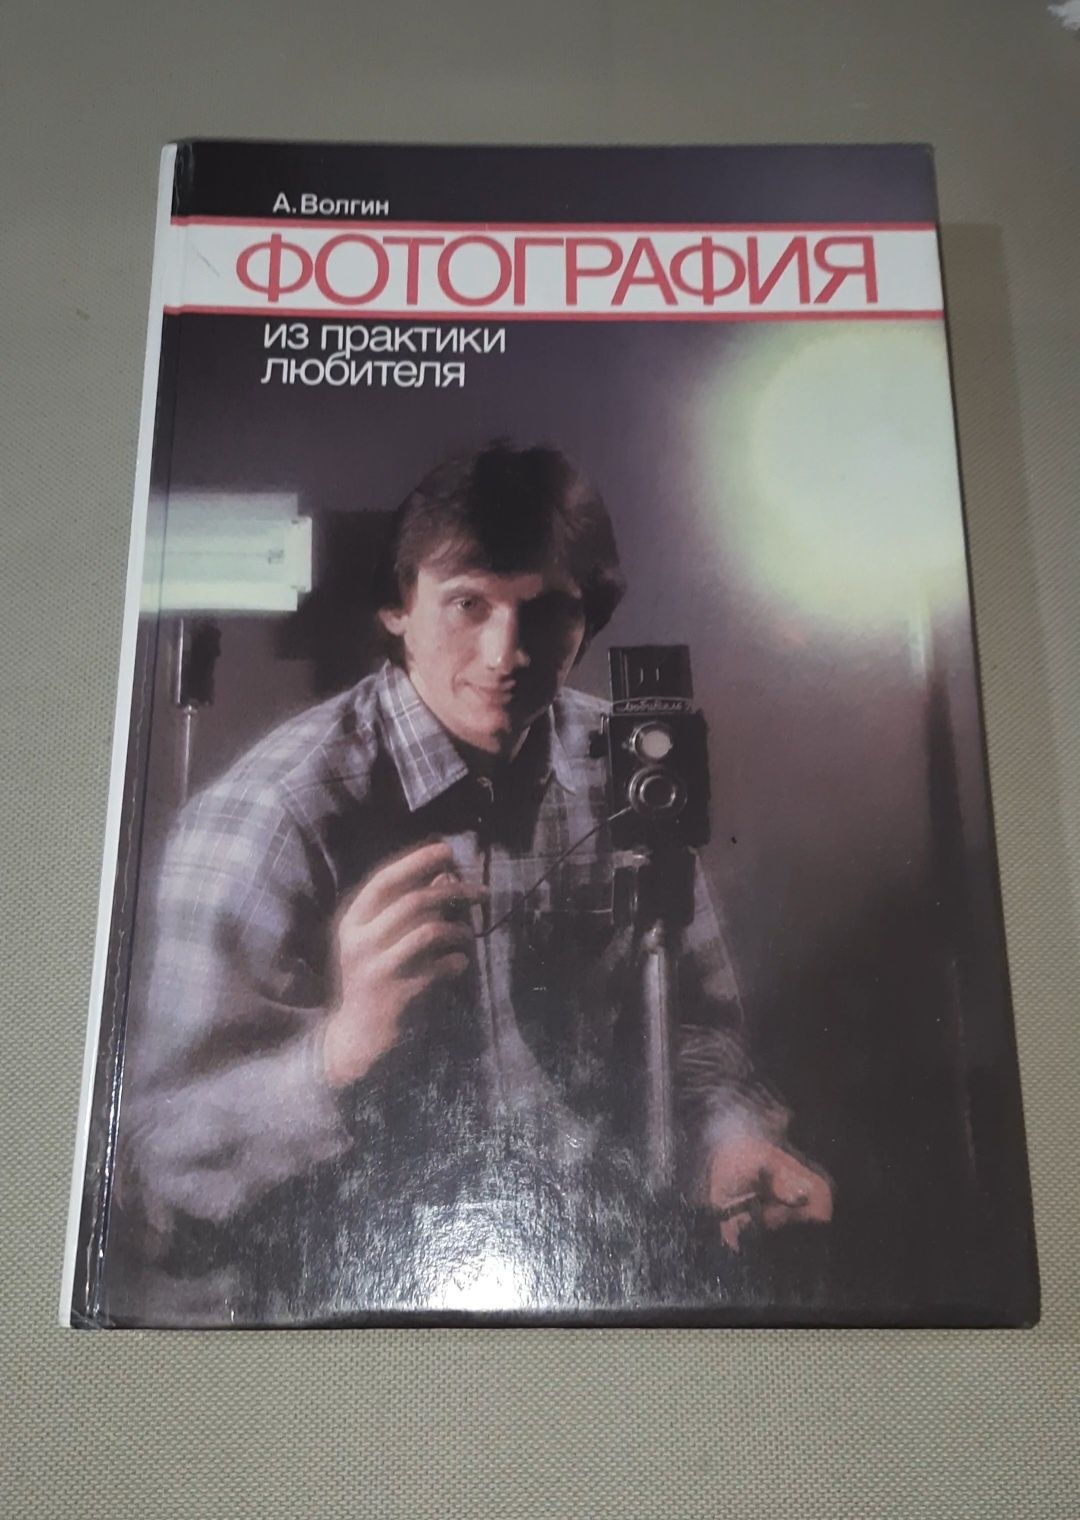 Книга "Фотография из практики любителя" А. Волгин